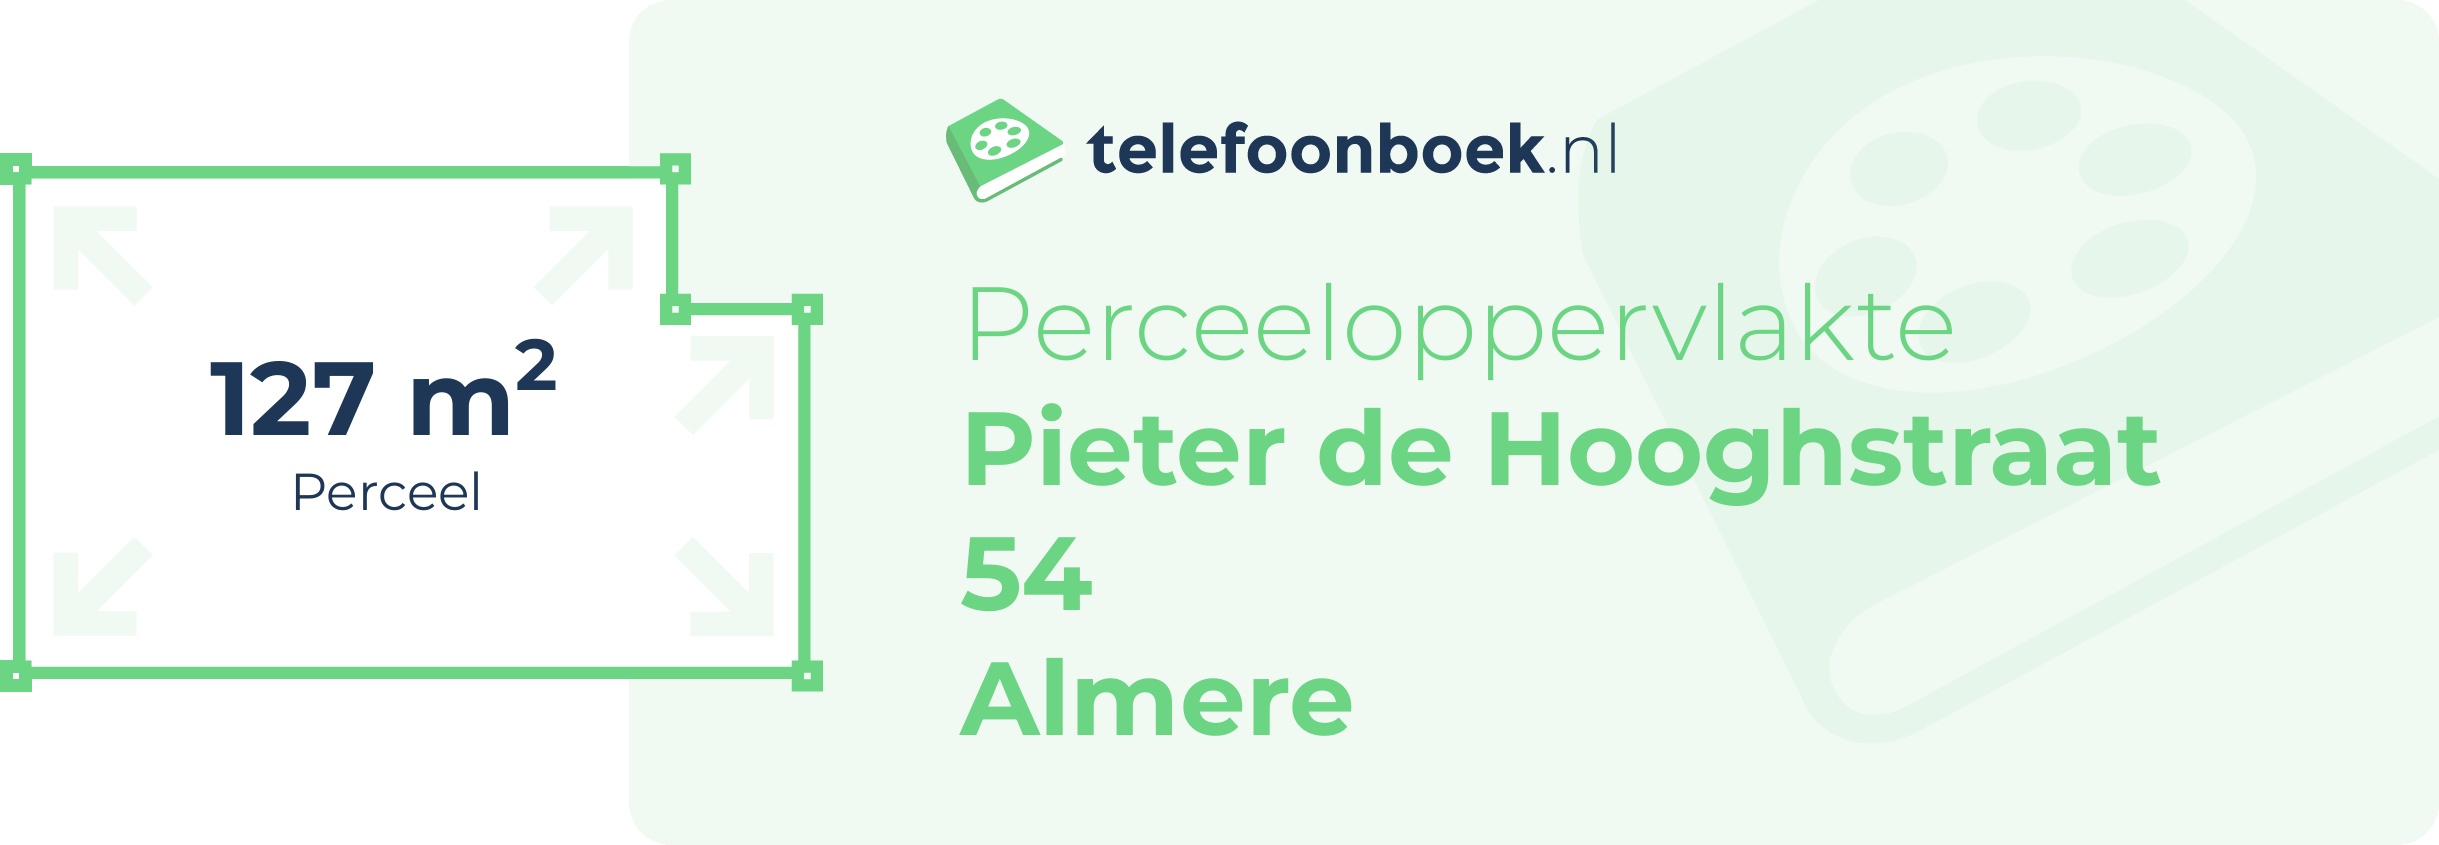 Perceeloppervlakte Pieter De Hooghstraat 54 Almere